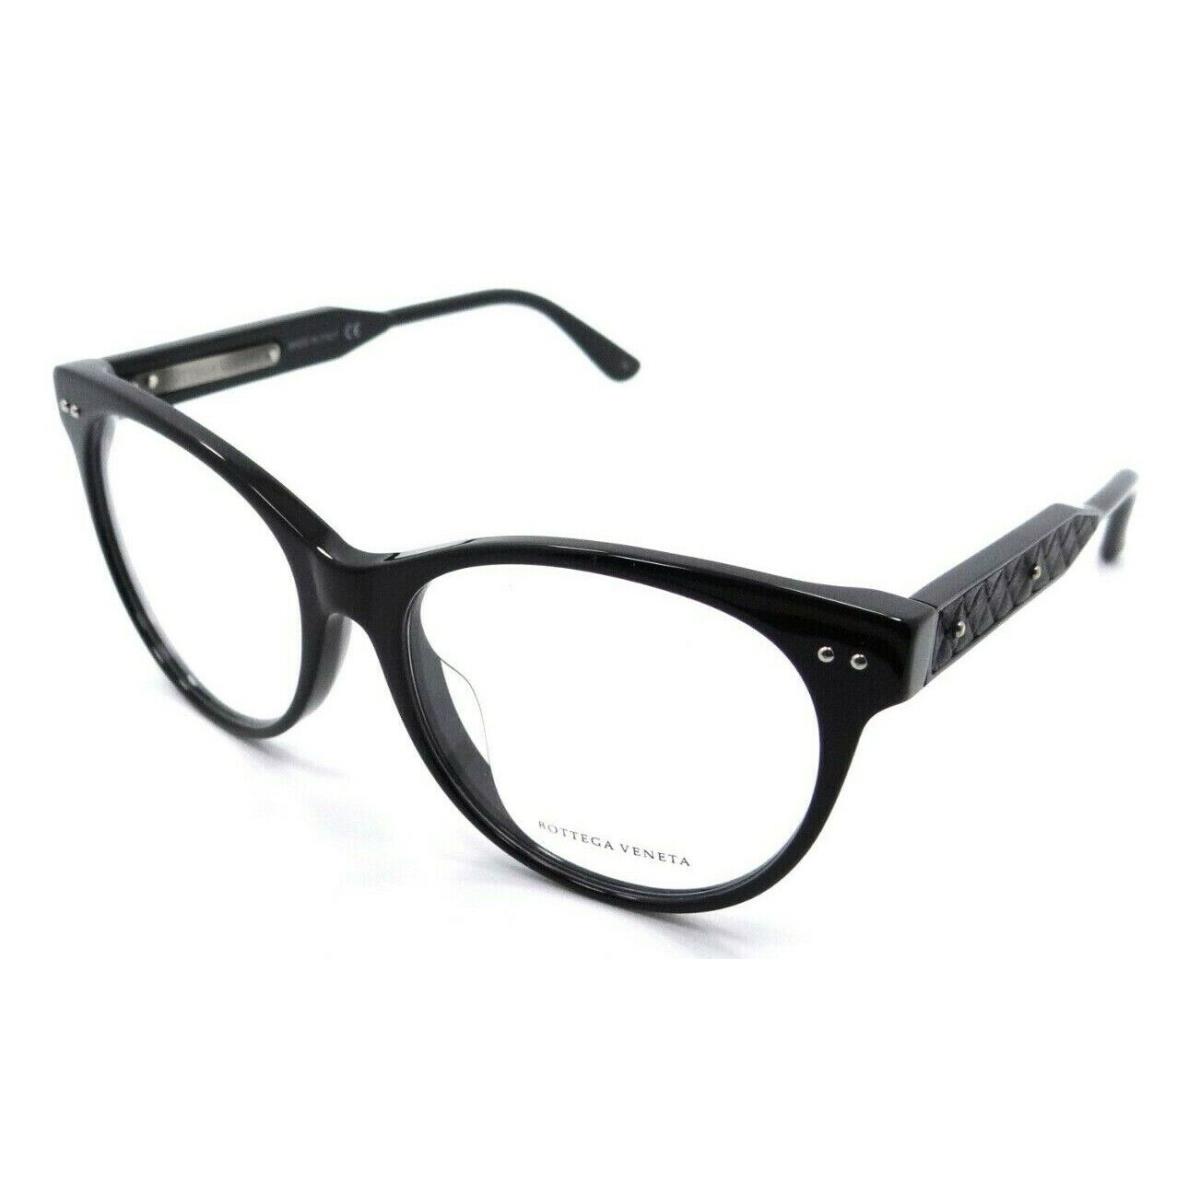 Bottega Veneta Eyeglasses Frames BV0017OA 001 52-16-145 Black Italy Asian Fit - Frame: